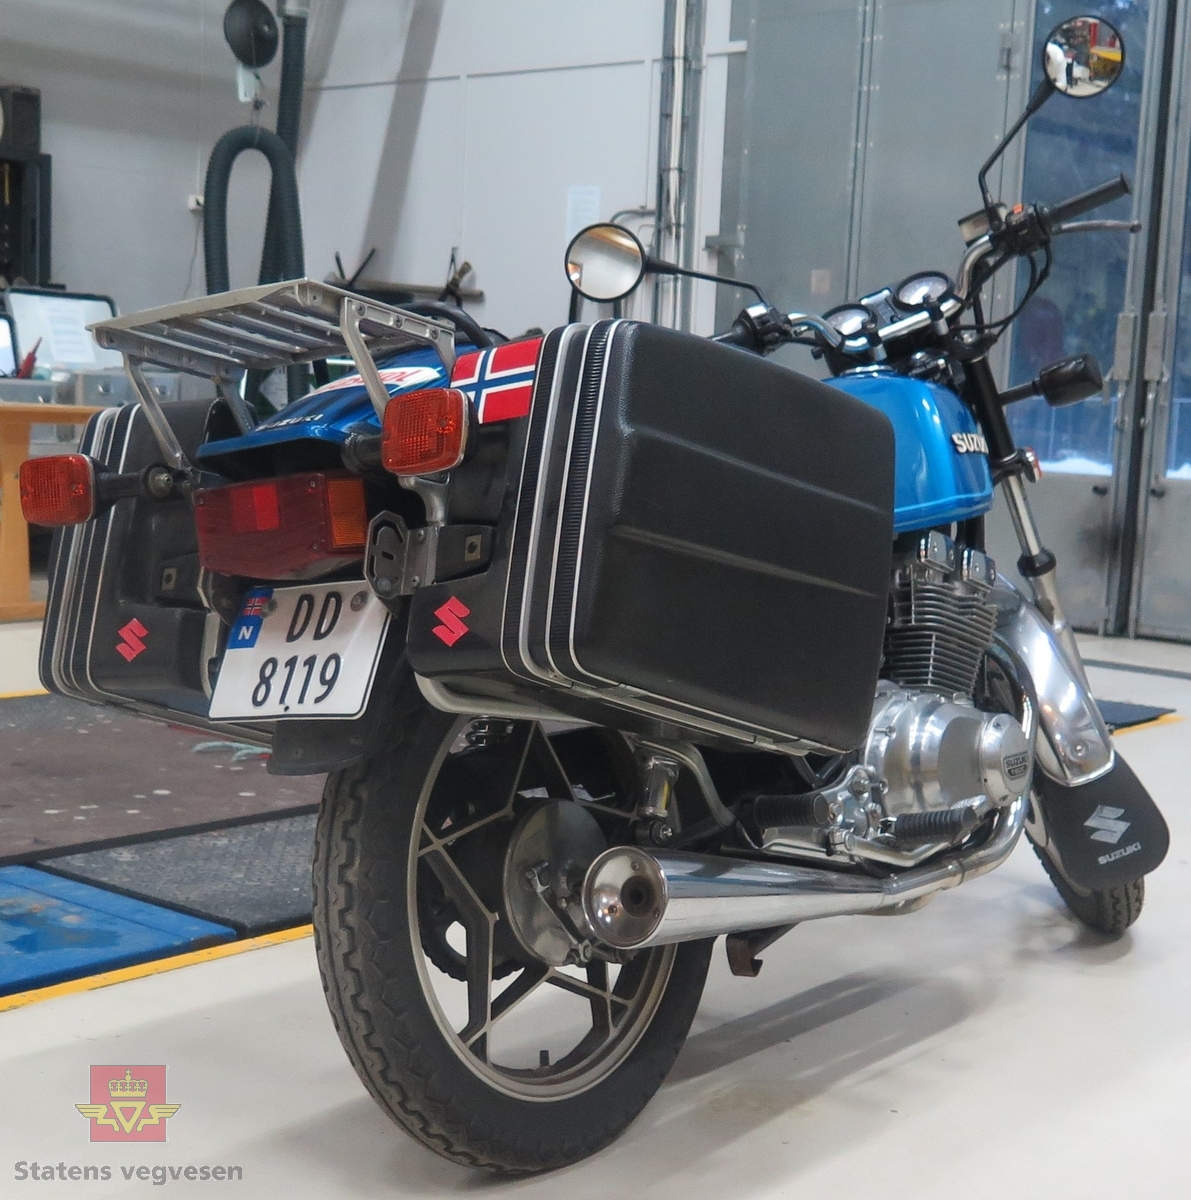 Suzuki GSX 400 DOHC 8 Valves. 2 hjuls motorsykkel med bakhjulstrekk (kjededrift). Motorsykkel har en bensindrevet 4-takts 2-sylindret DOHC 8 ventil motor. Den har et sylindervolum på 399 kubikkcentimeter og en effekt på 42 Hk. Motorsykkelen har 2 sitteplasser.